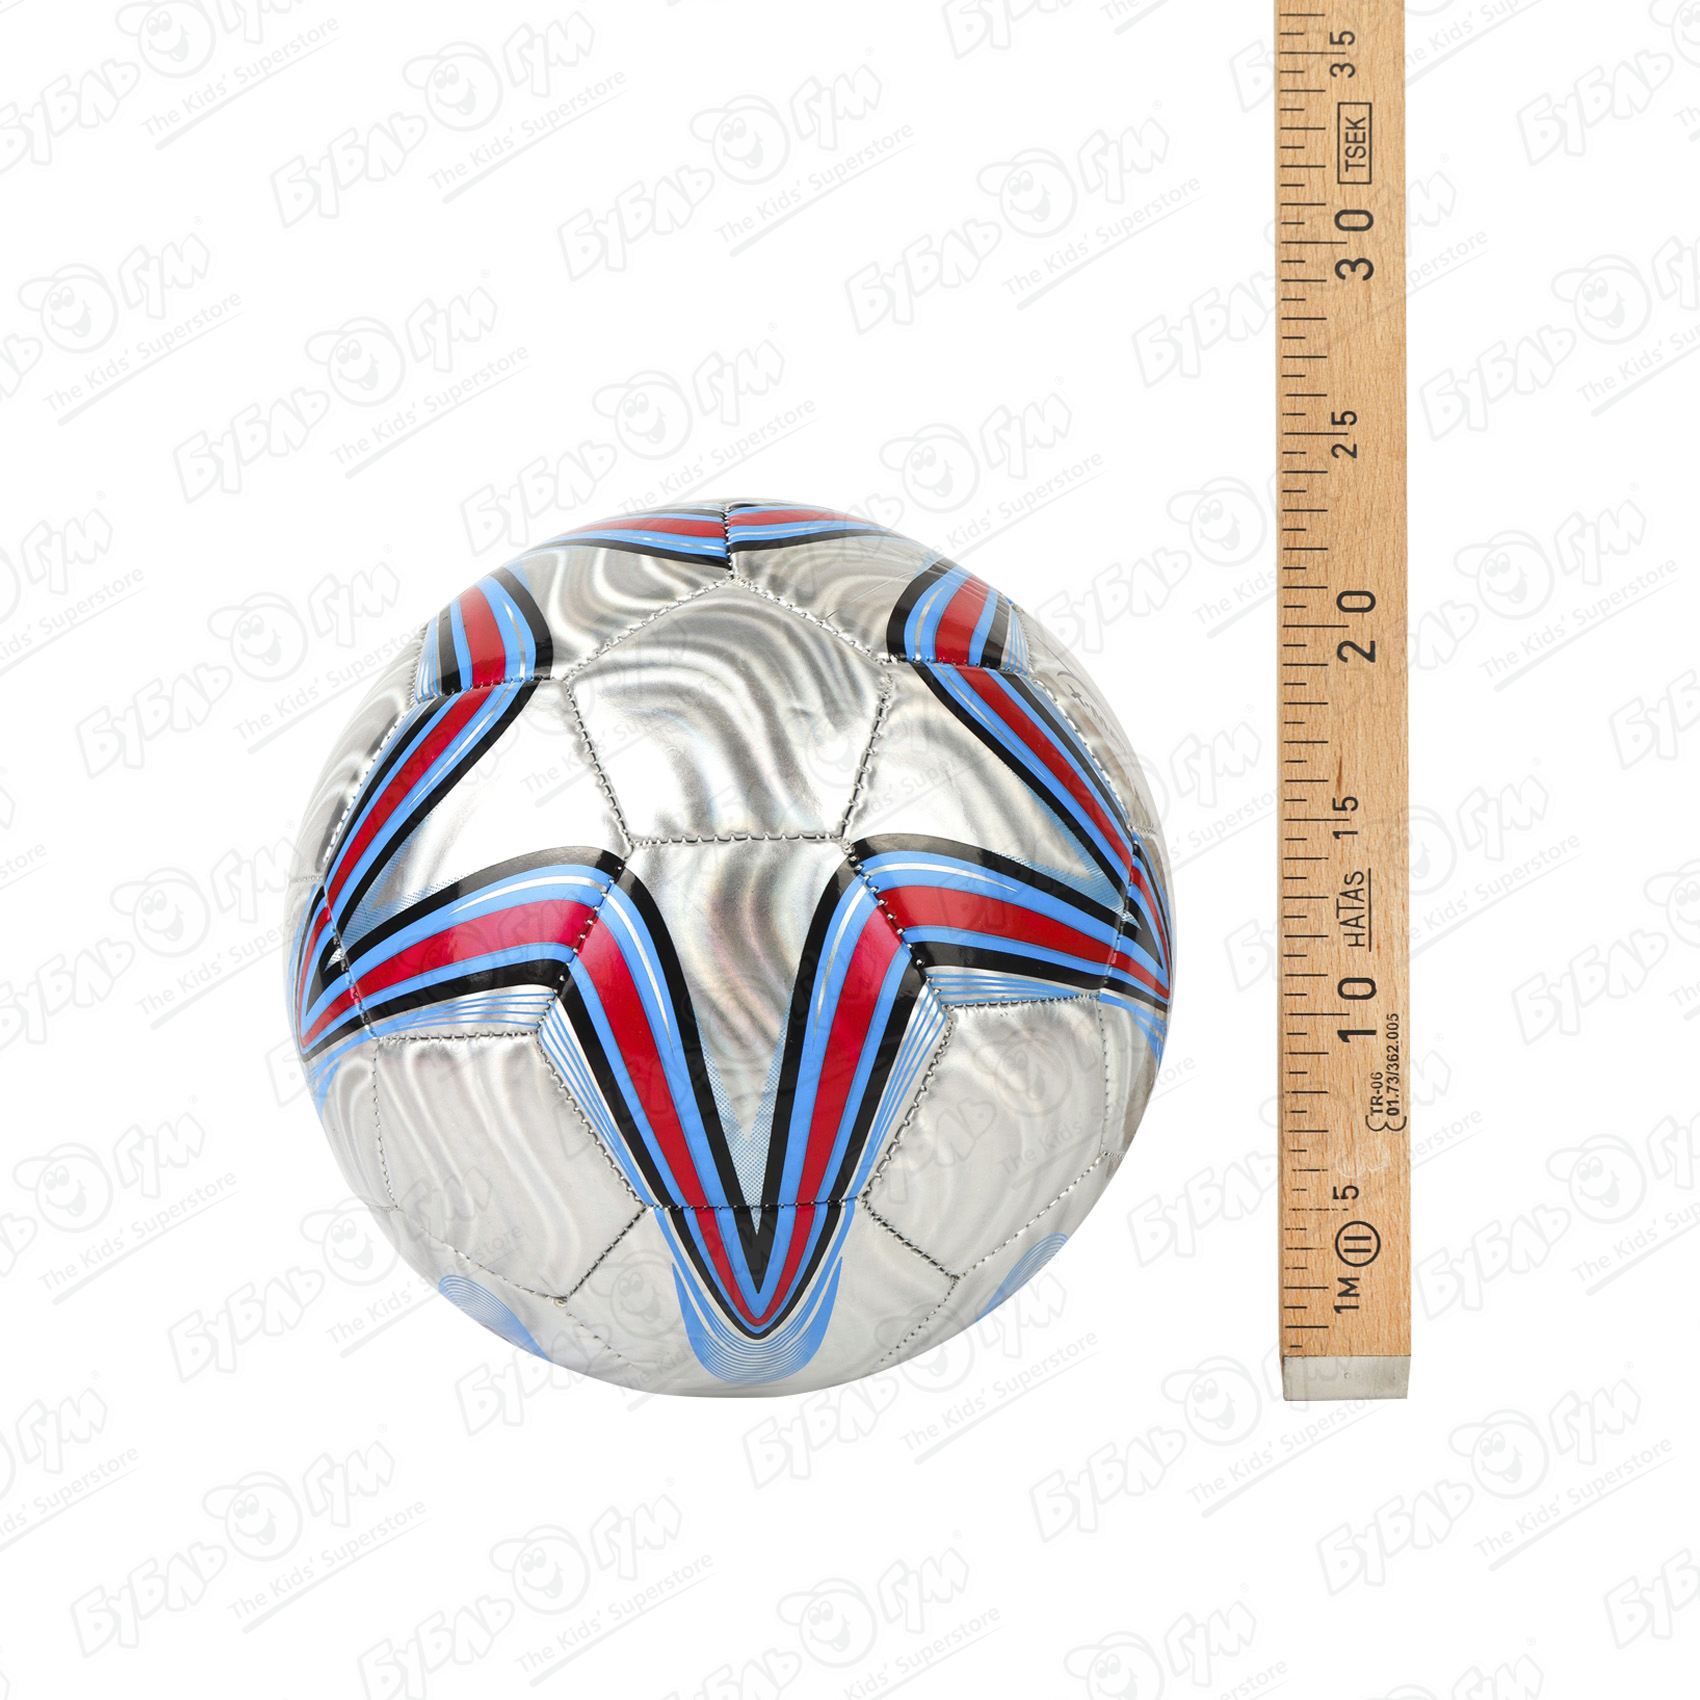 Мяч футбольный X-match металлик - фото 4